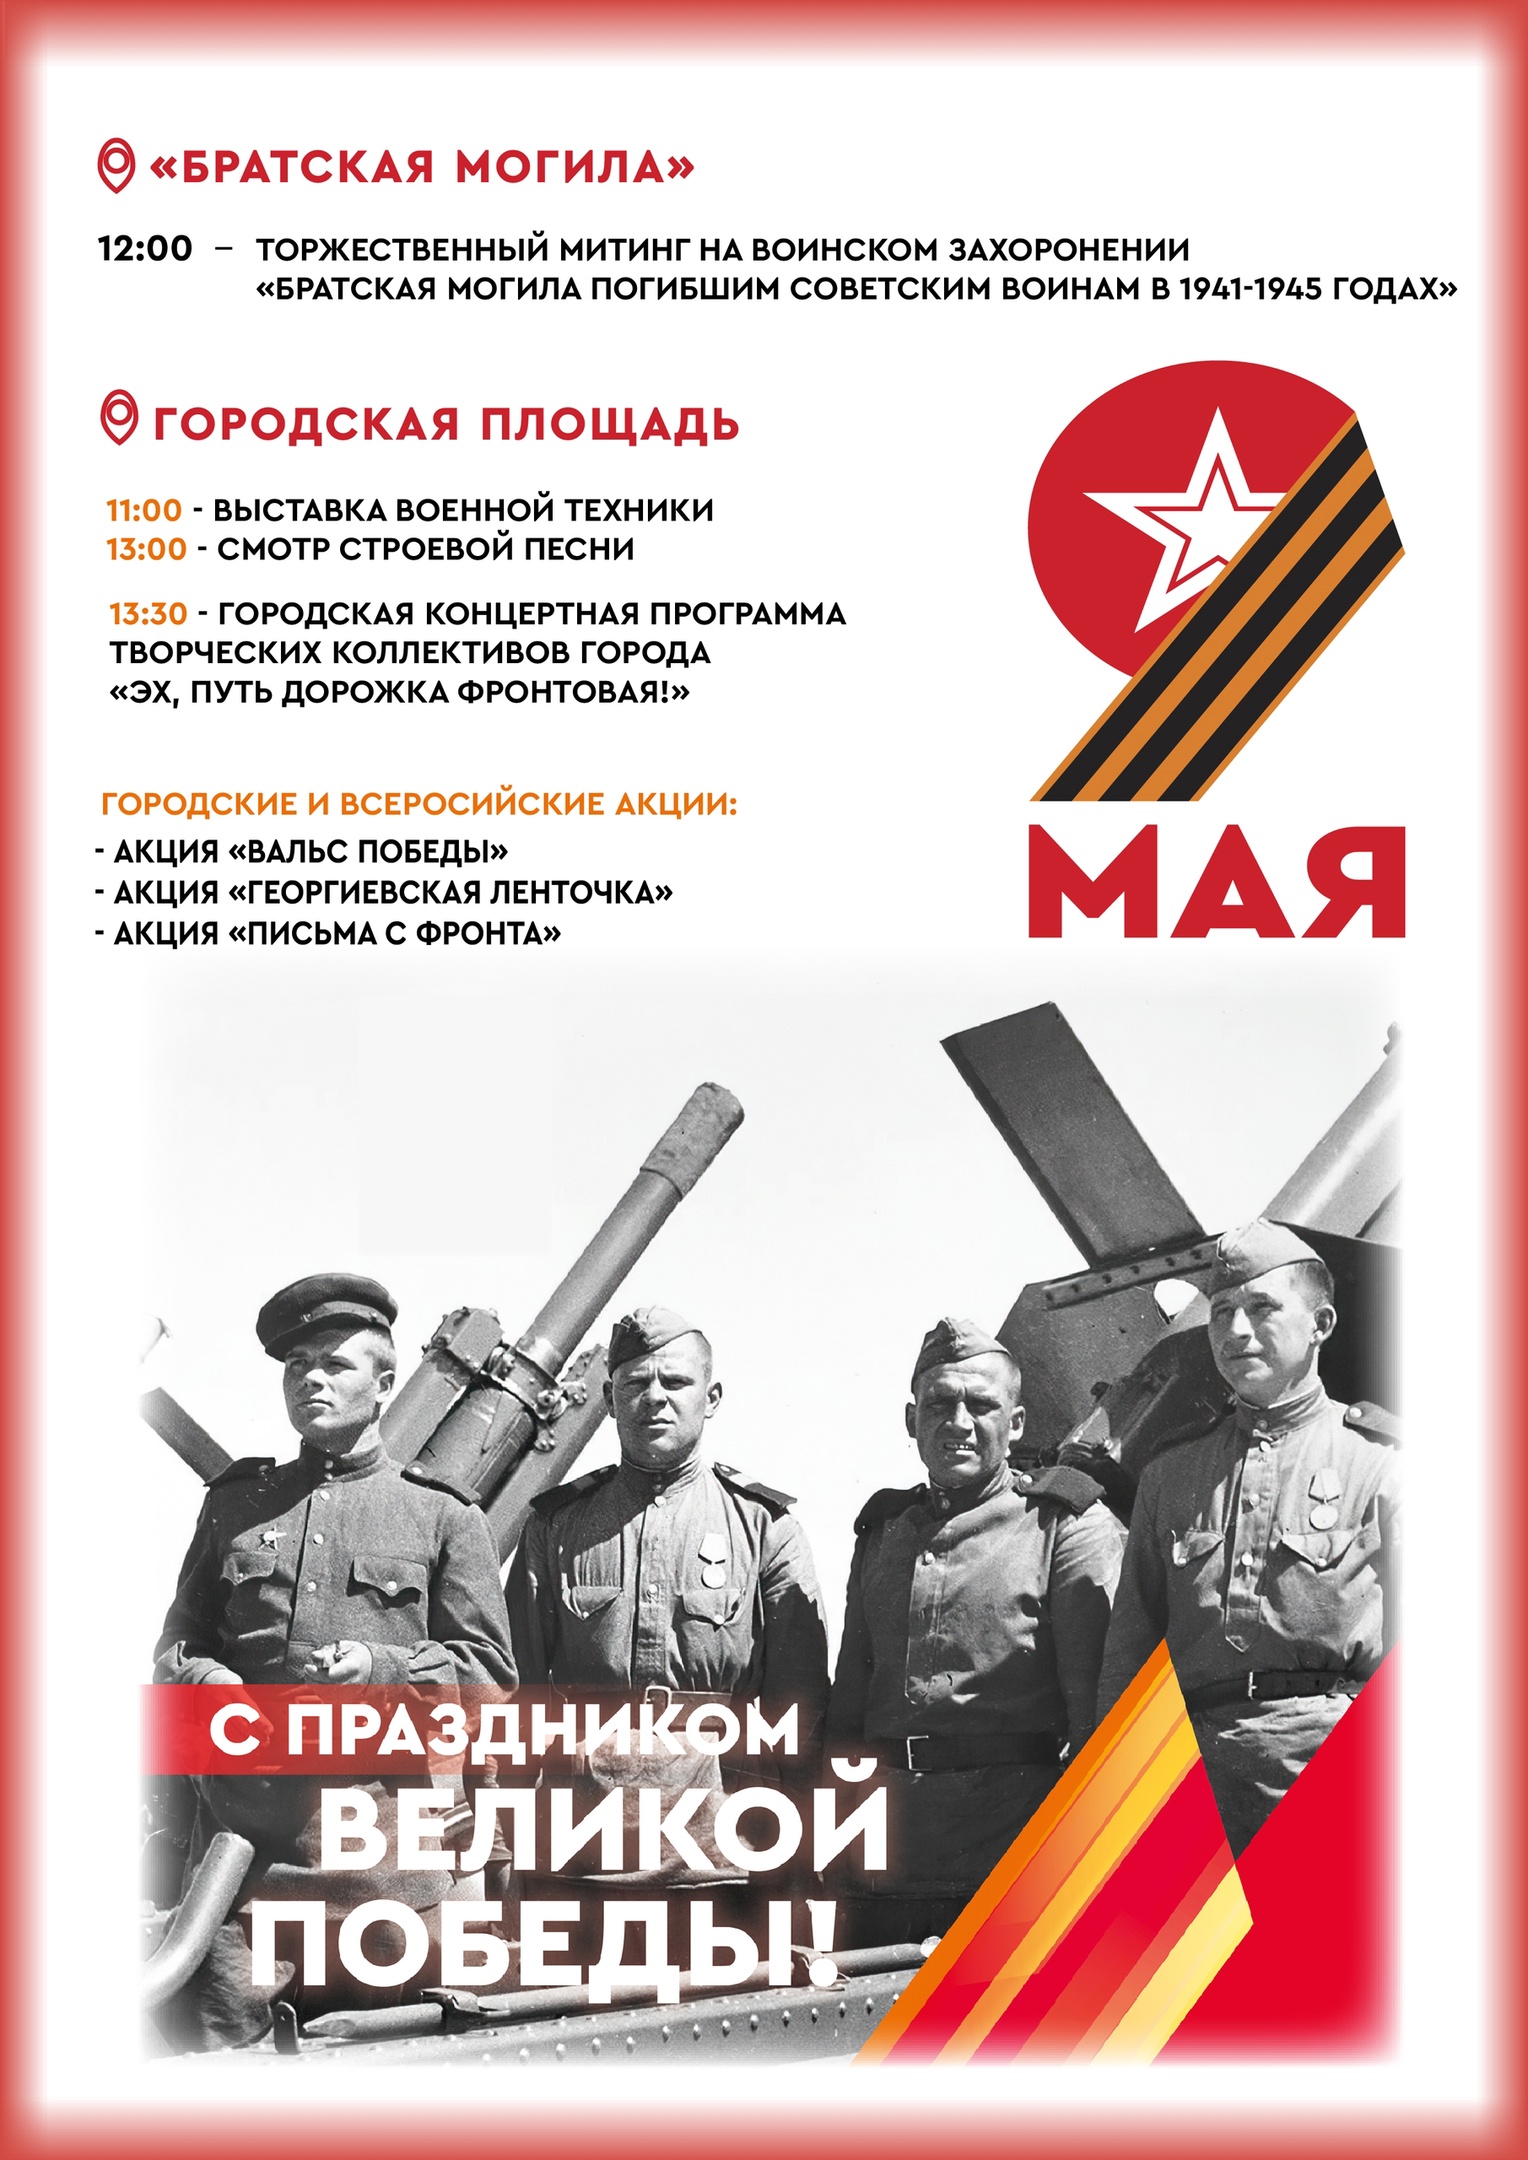 Мероприятия, посвященные празднованию 9 мая, Дня Победы в Великой Отечественной войне 1941-1945гг.